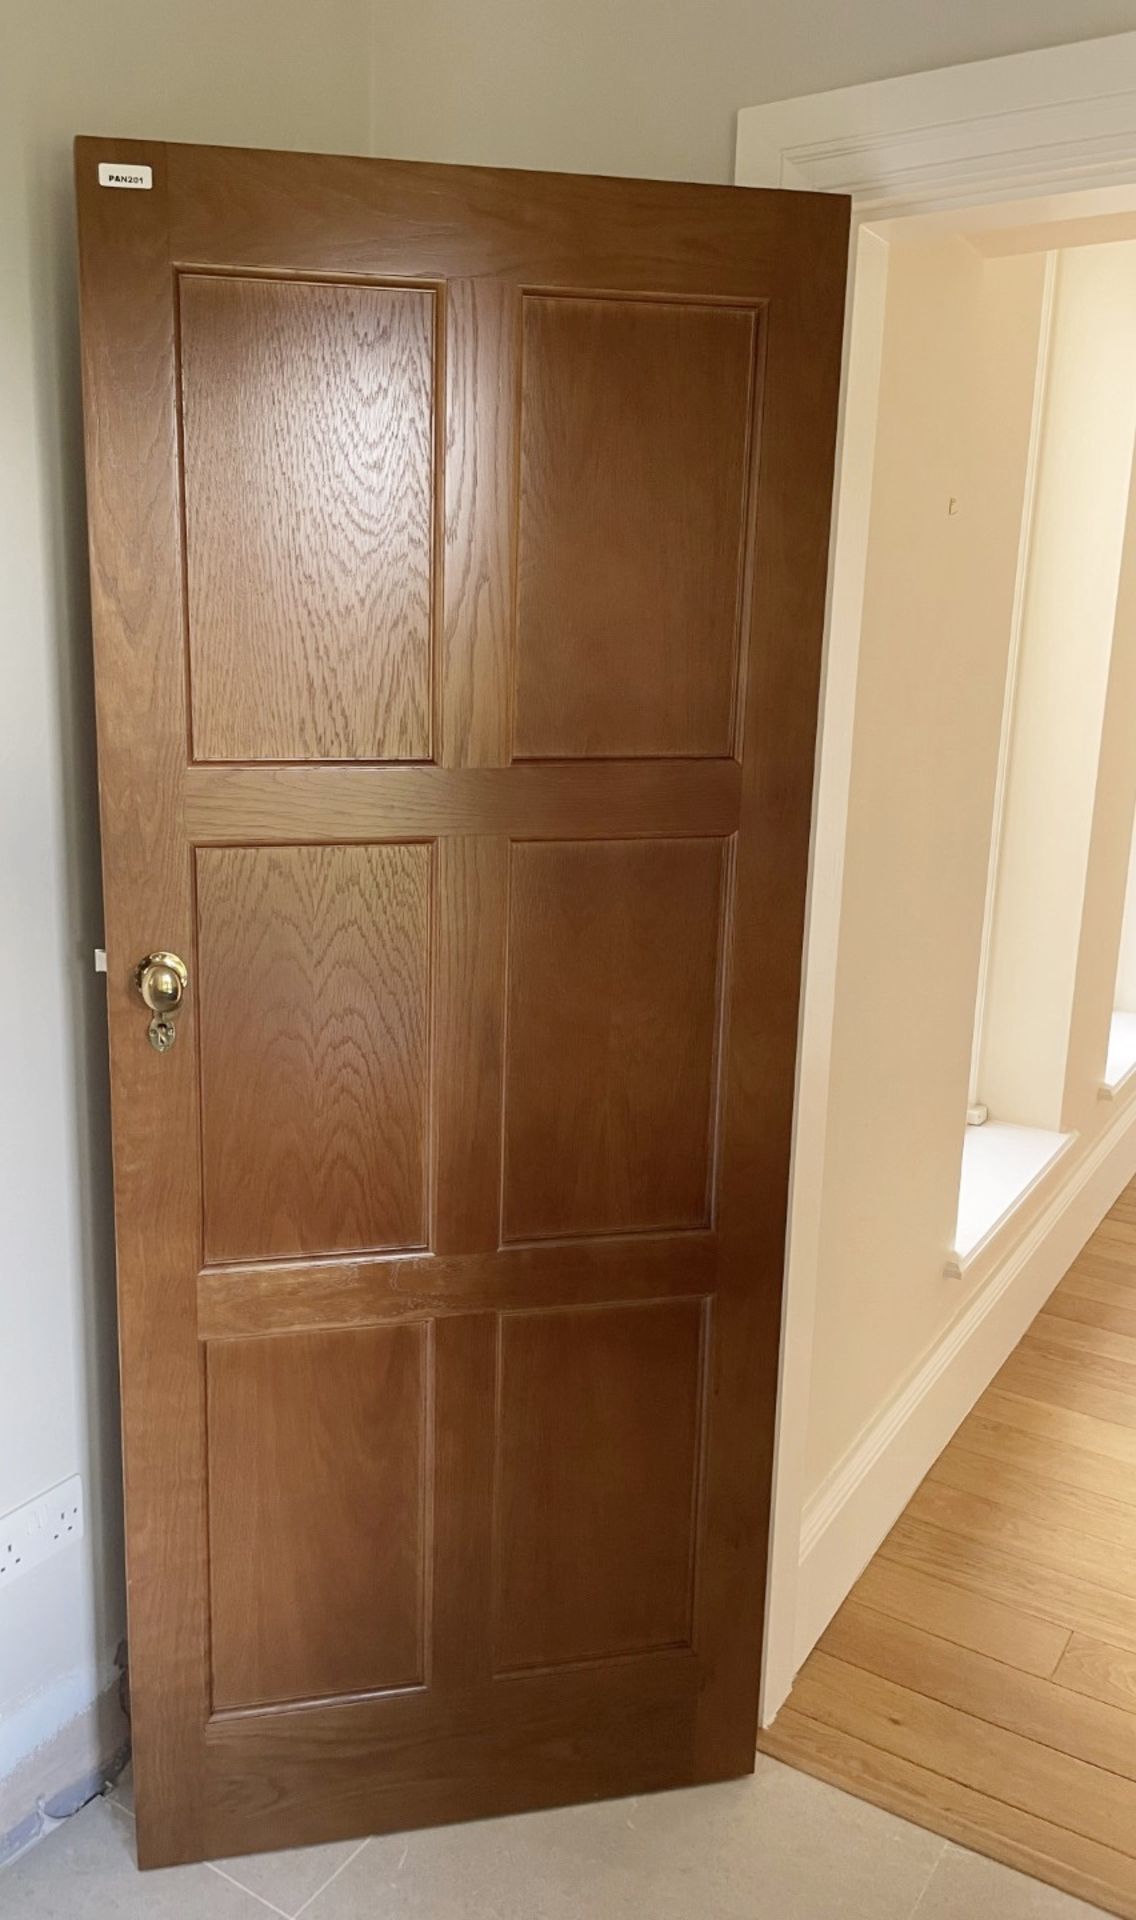 1 x Solid Oak Wooden Lockable Internal Door - Ref: PAN201 / INHLWY - CL896 - NO VAT - Image 2 of 10